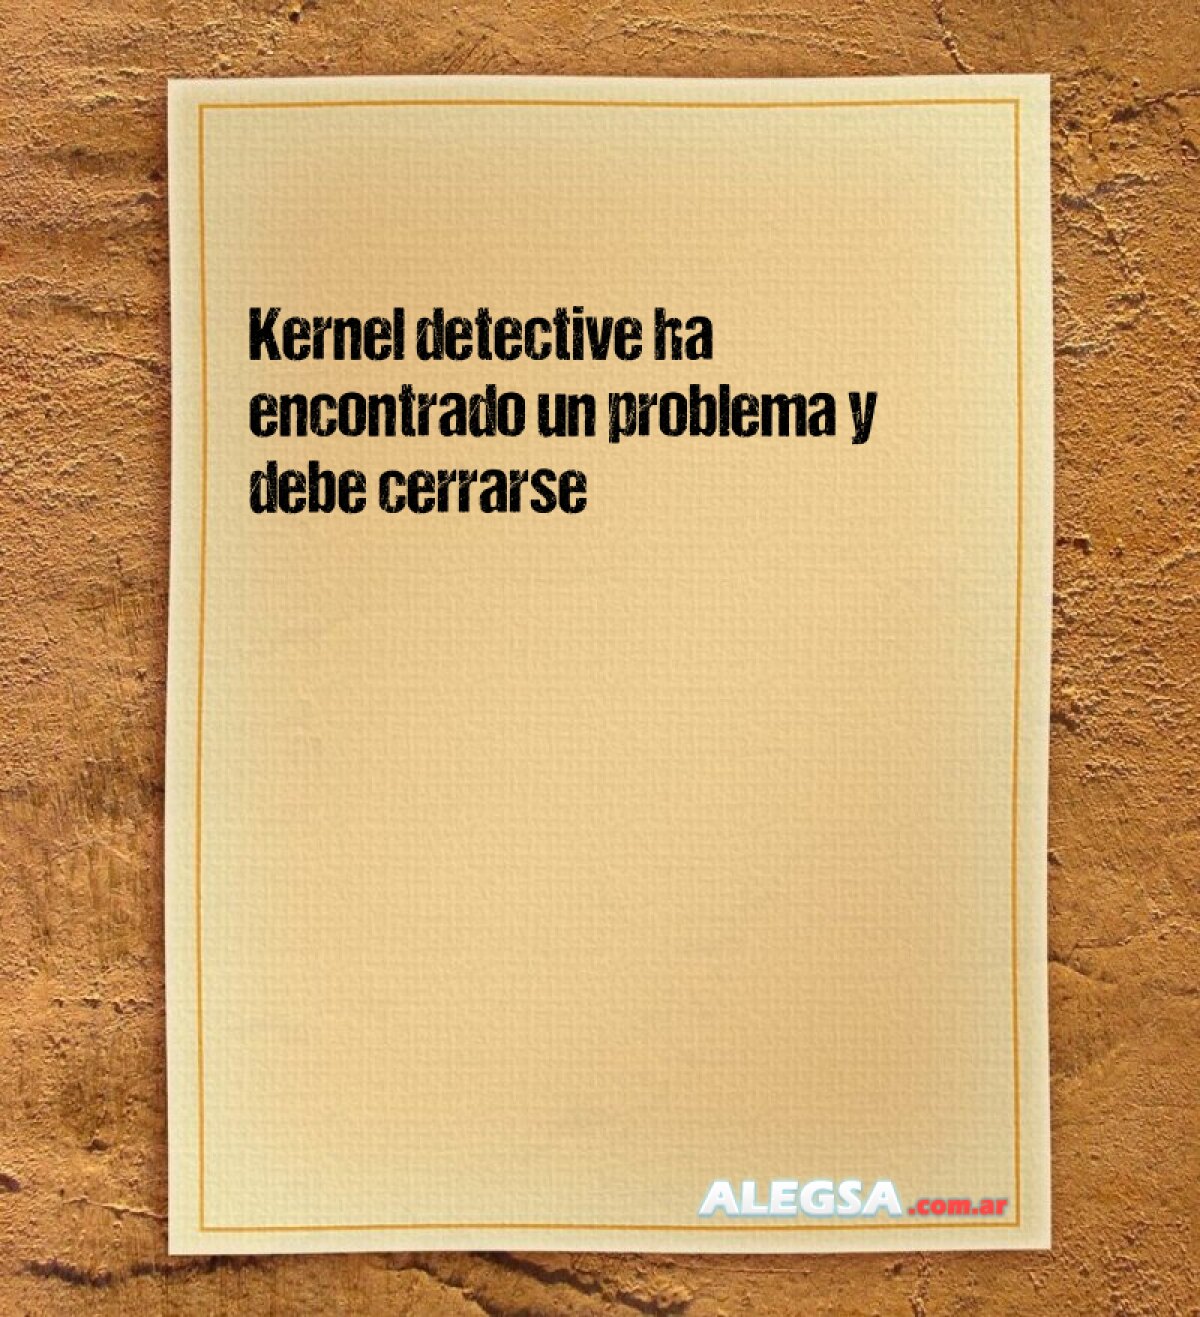 Kernel detective ha encontrado un problema y debe cerrarse